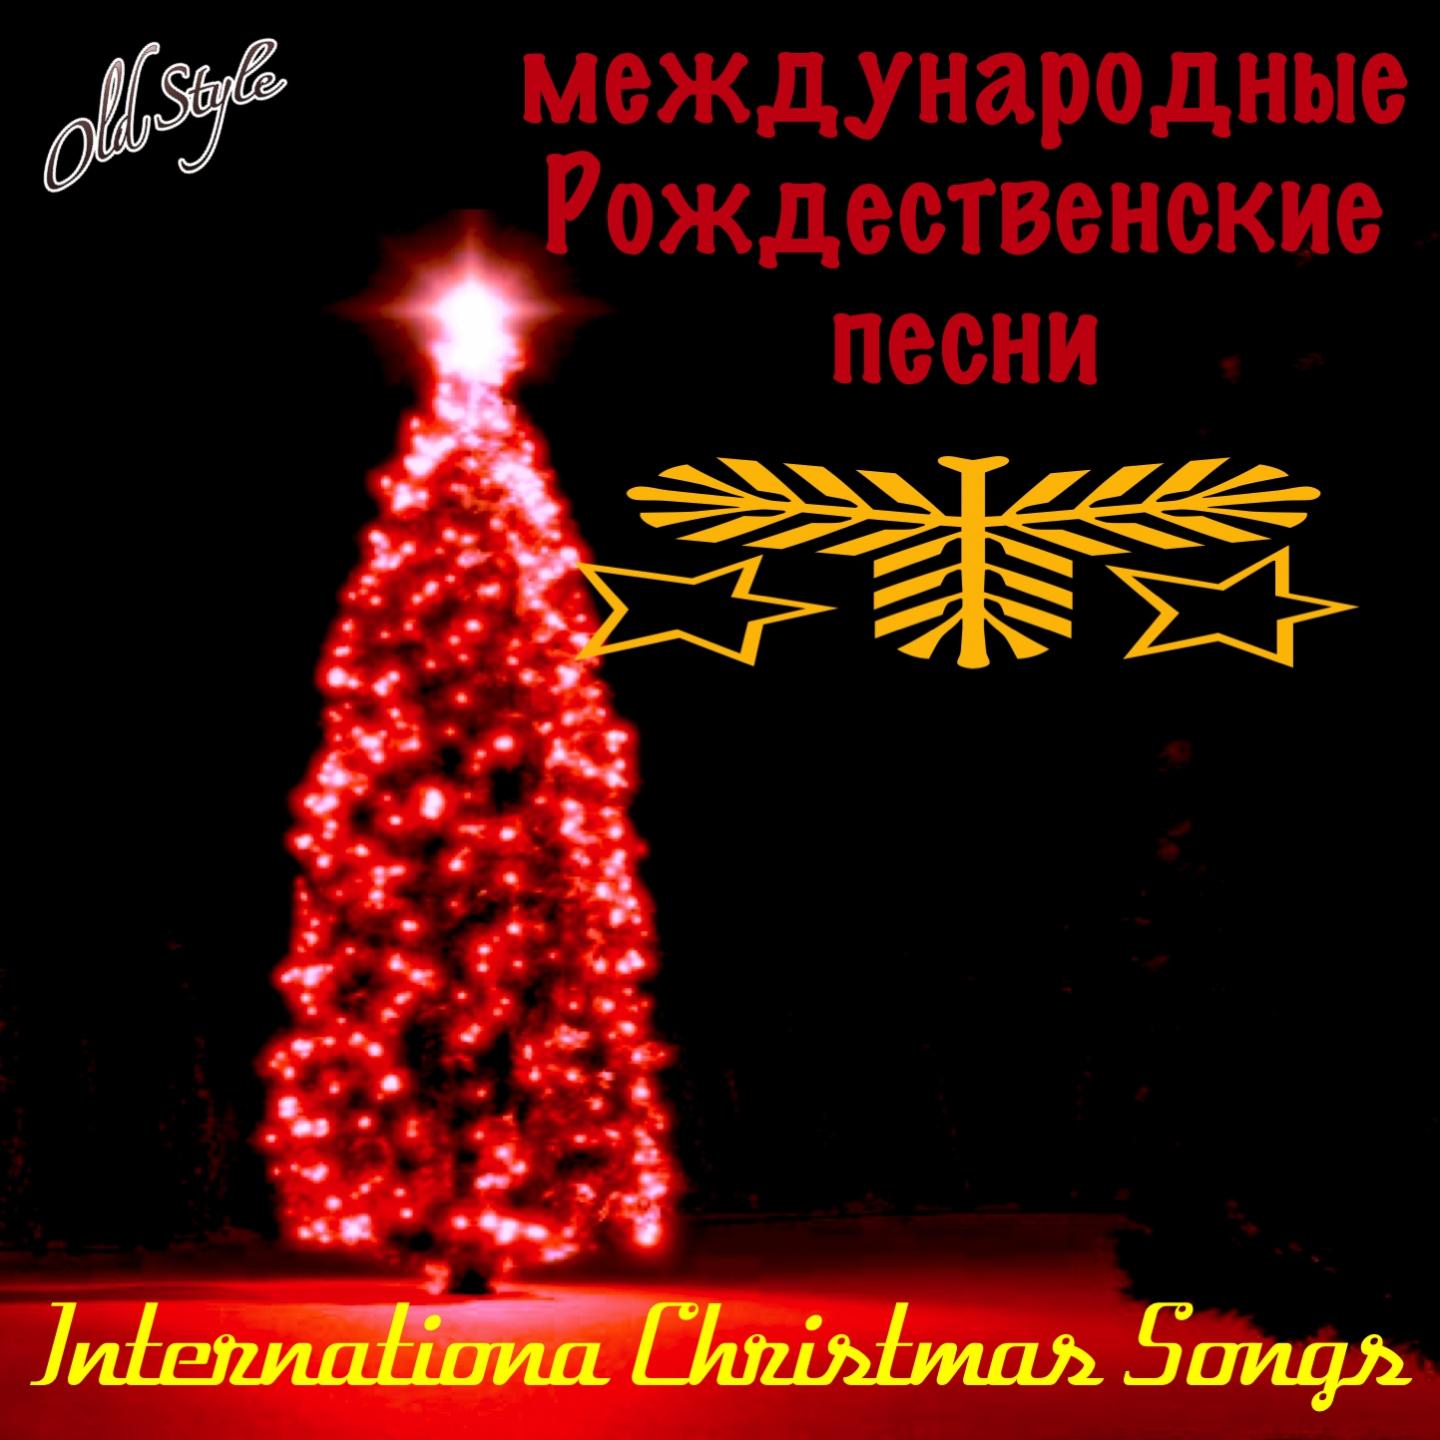 Международные рождественские песни (International Christmas Songs)